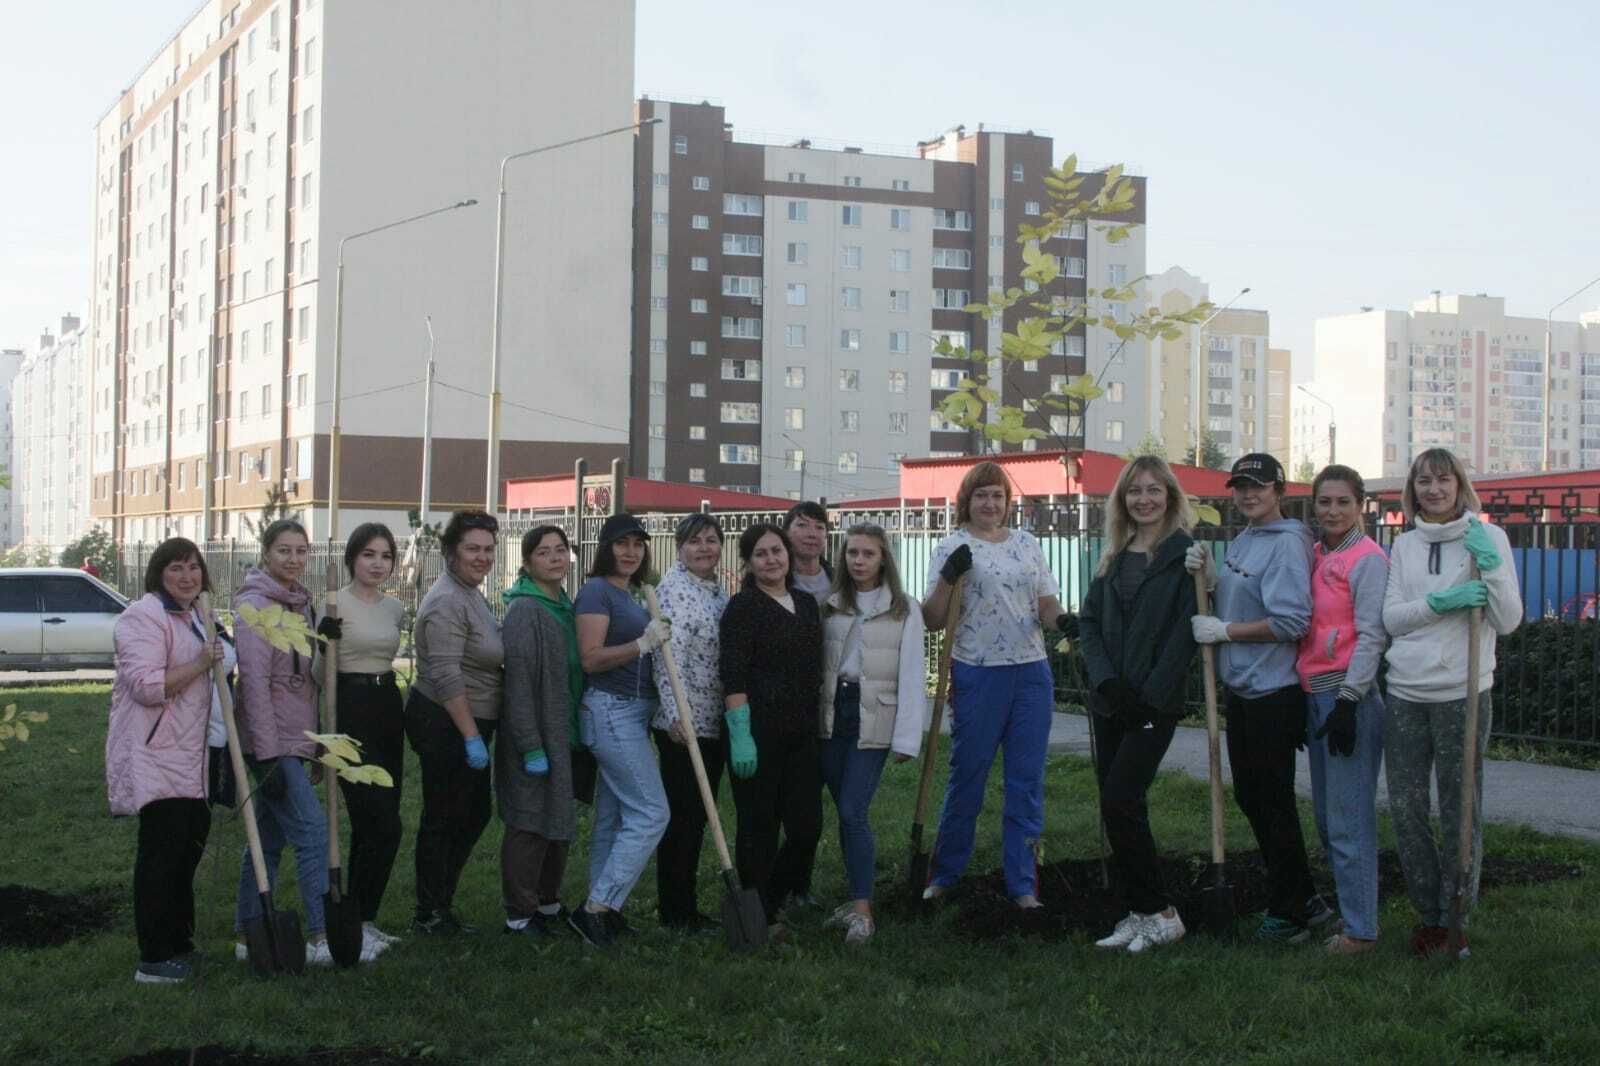 Стерлитамак присоединился к экологической акции "Зеленая Башкирия"